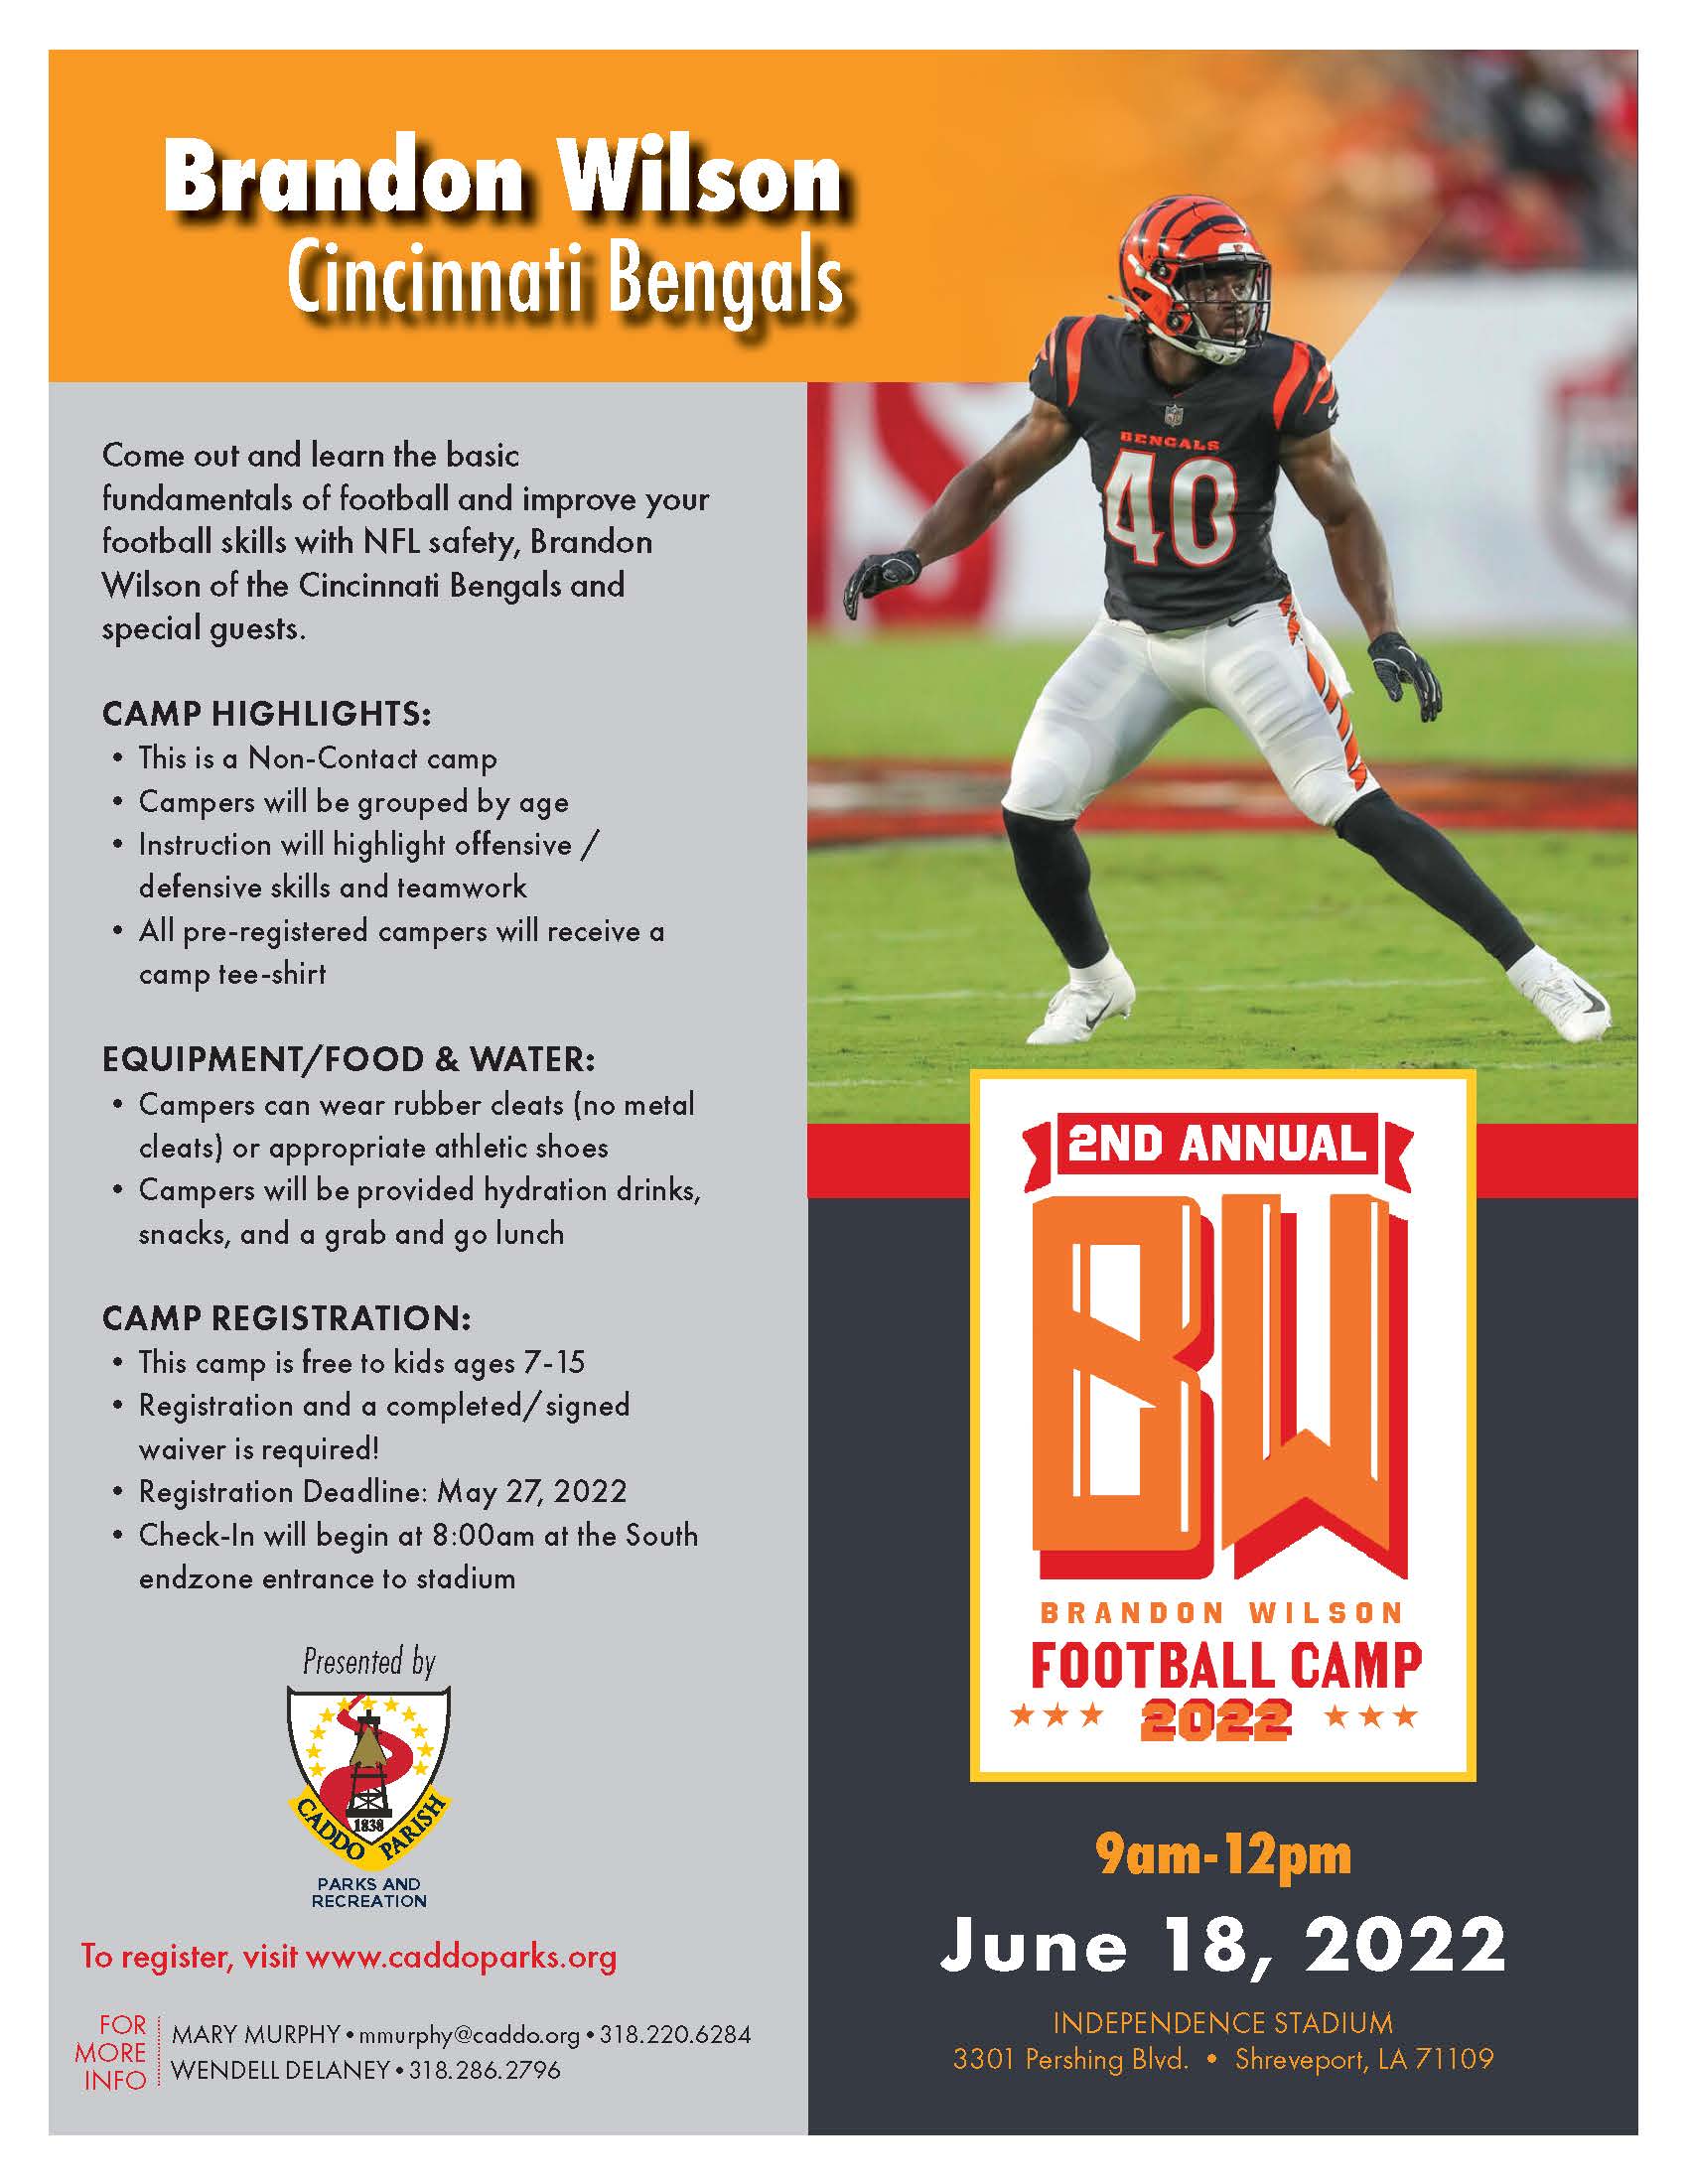 Brandon Wilson, of Cincinnati Bengals, to host football camp